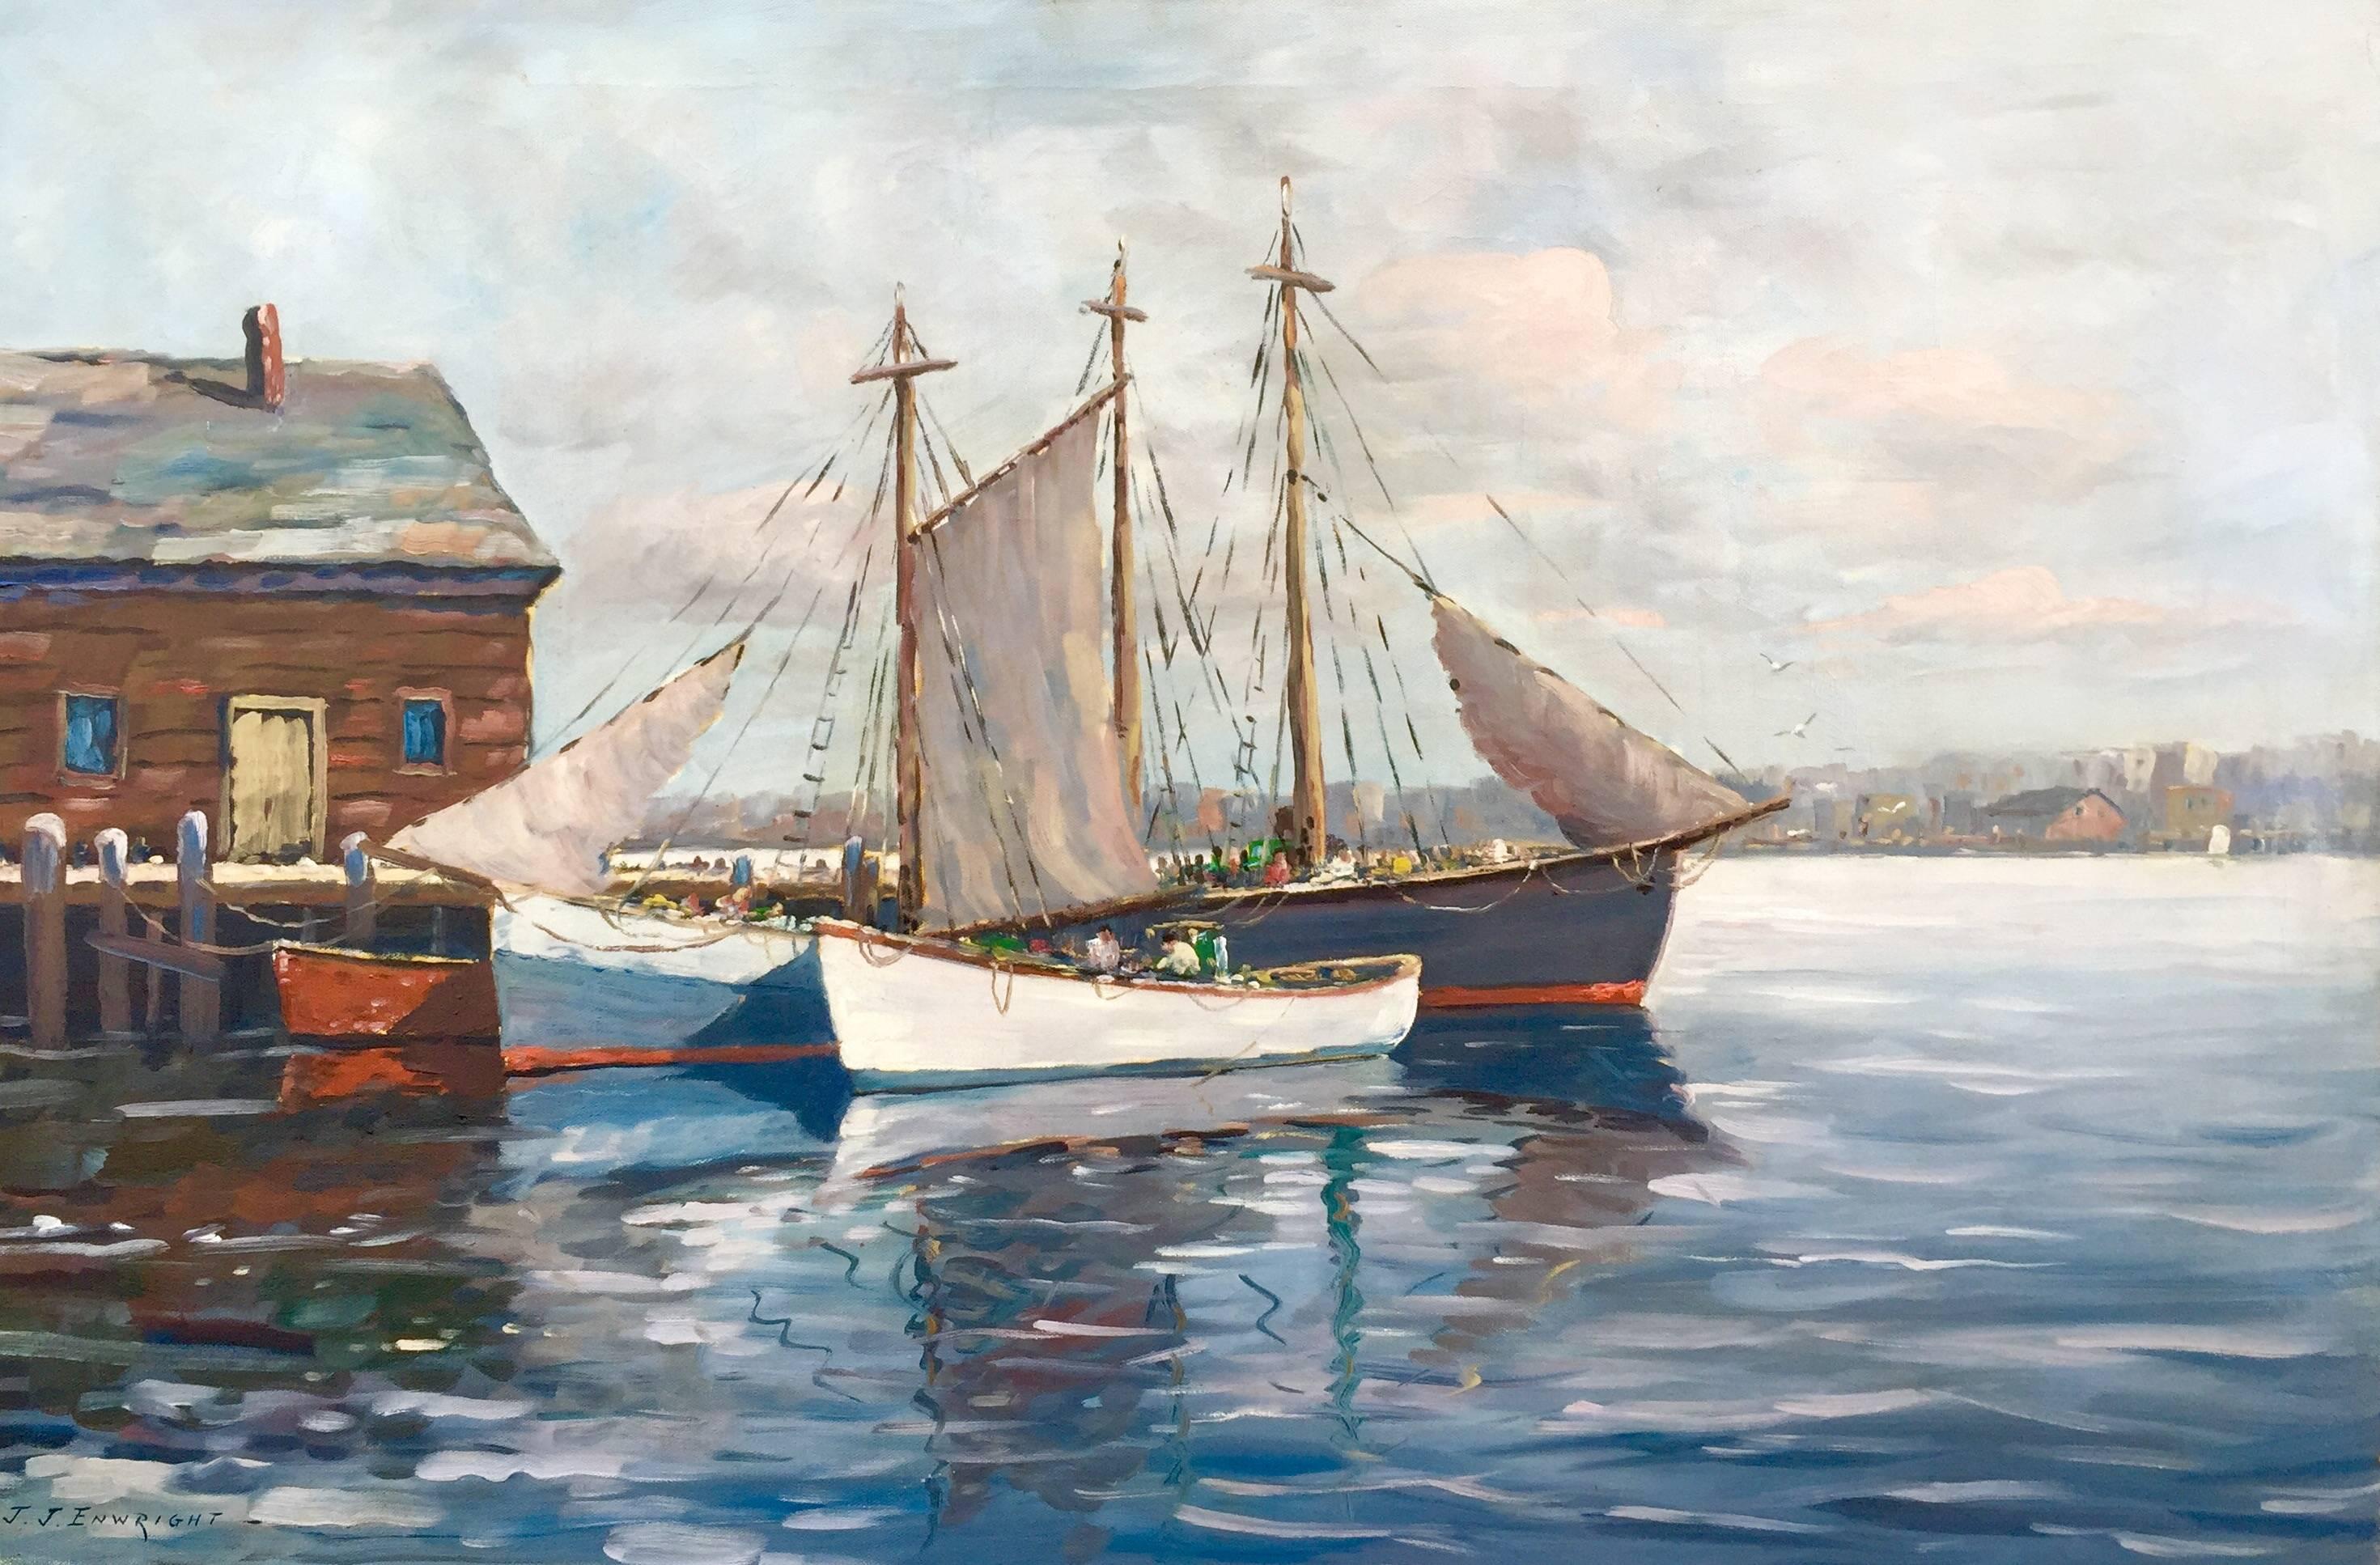 C. Hjalmar Amundsen Landscape Painting - "Fishing Boats in Port"